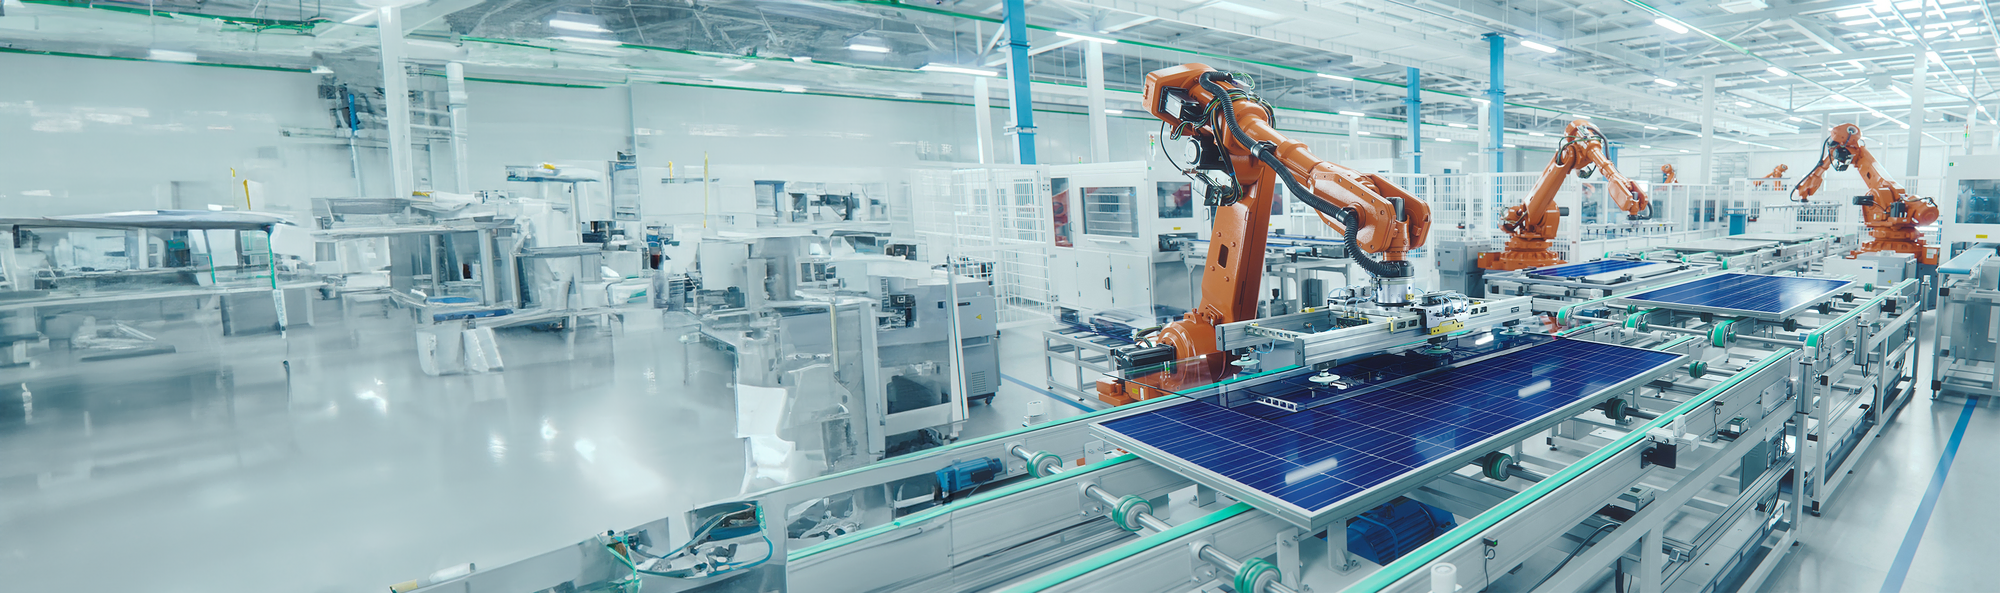  Das Bild zeigt eine helle, moderne Fabrikhalle mit einer Fertigungsstraße, in der mehrere orangefarbene Roboterarme an der Montage oder Handhabung von Solarpaneelen arbeiten.